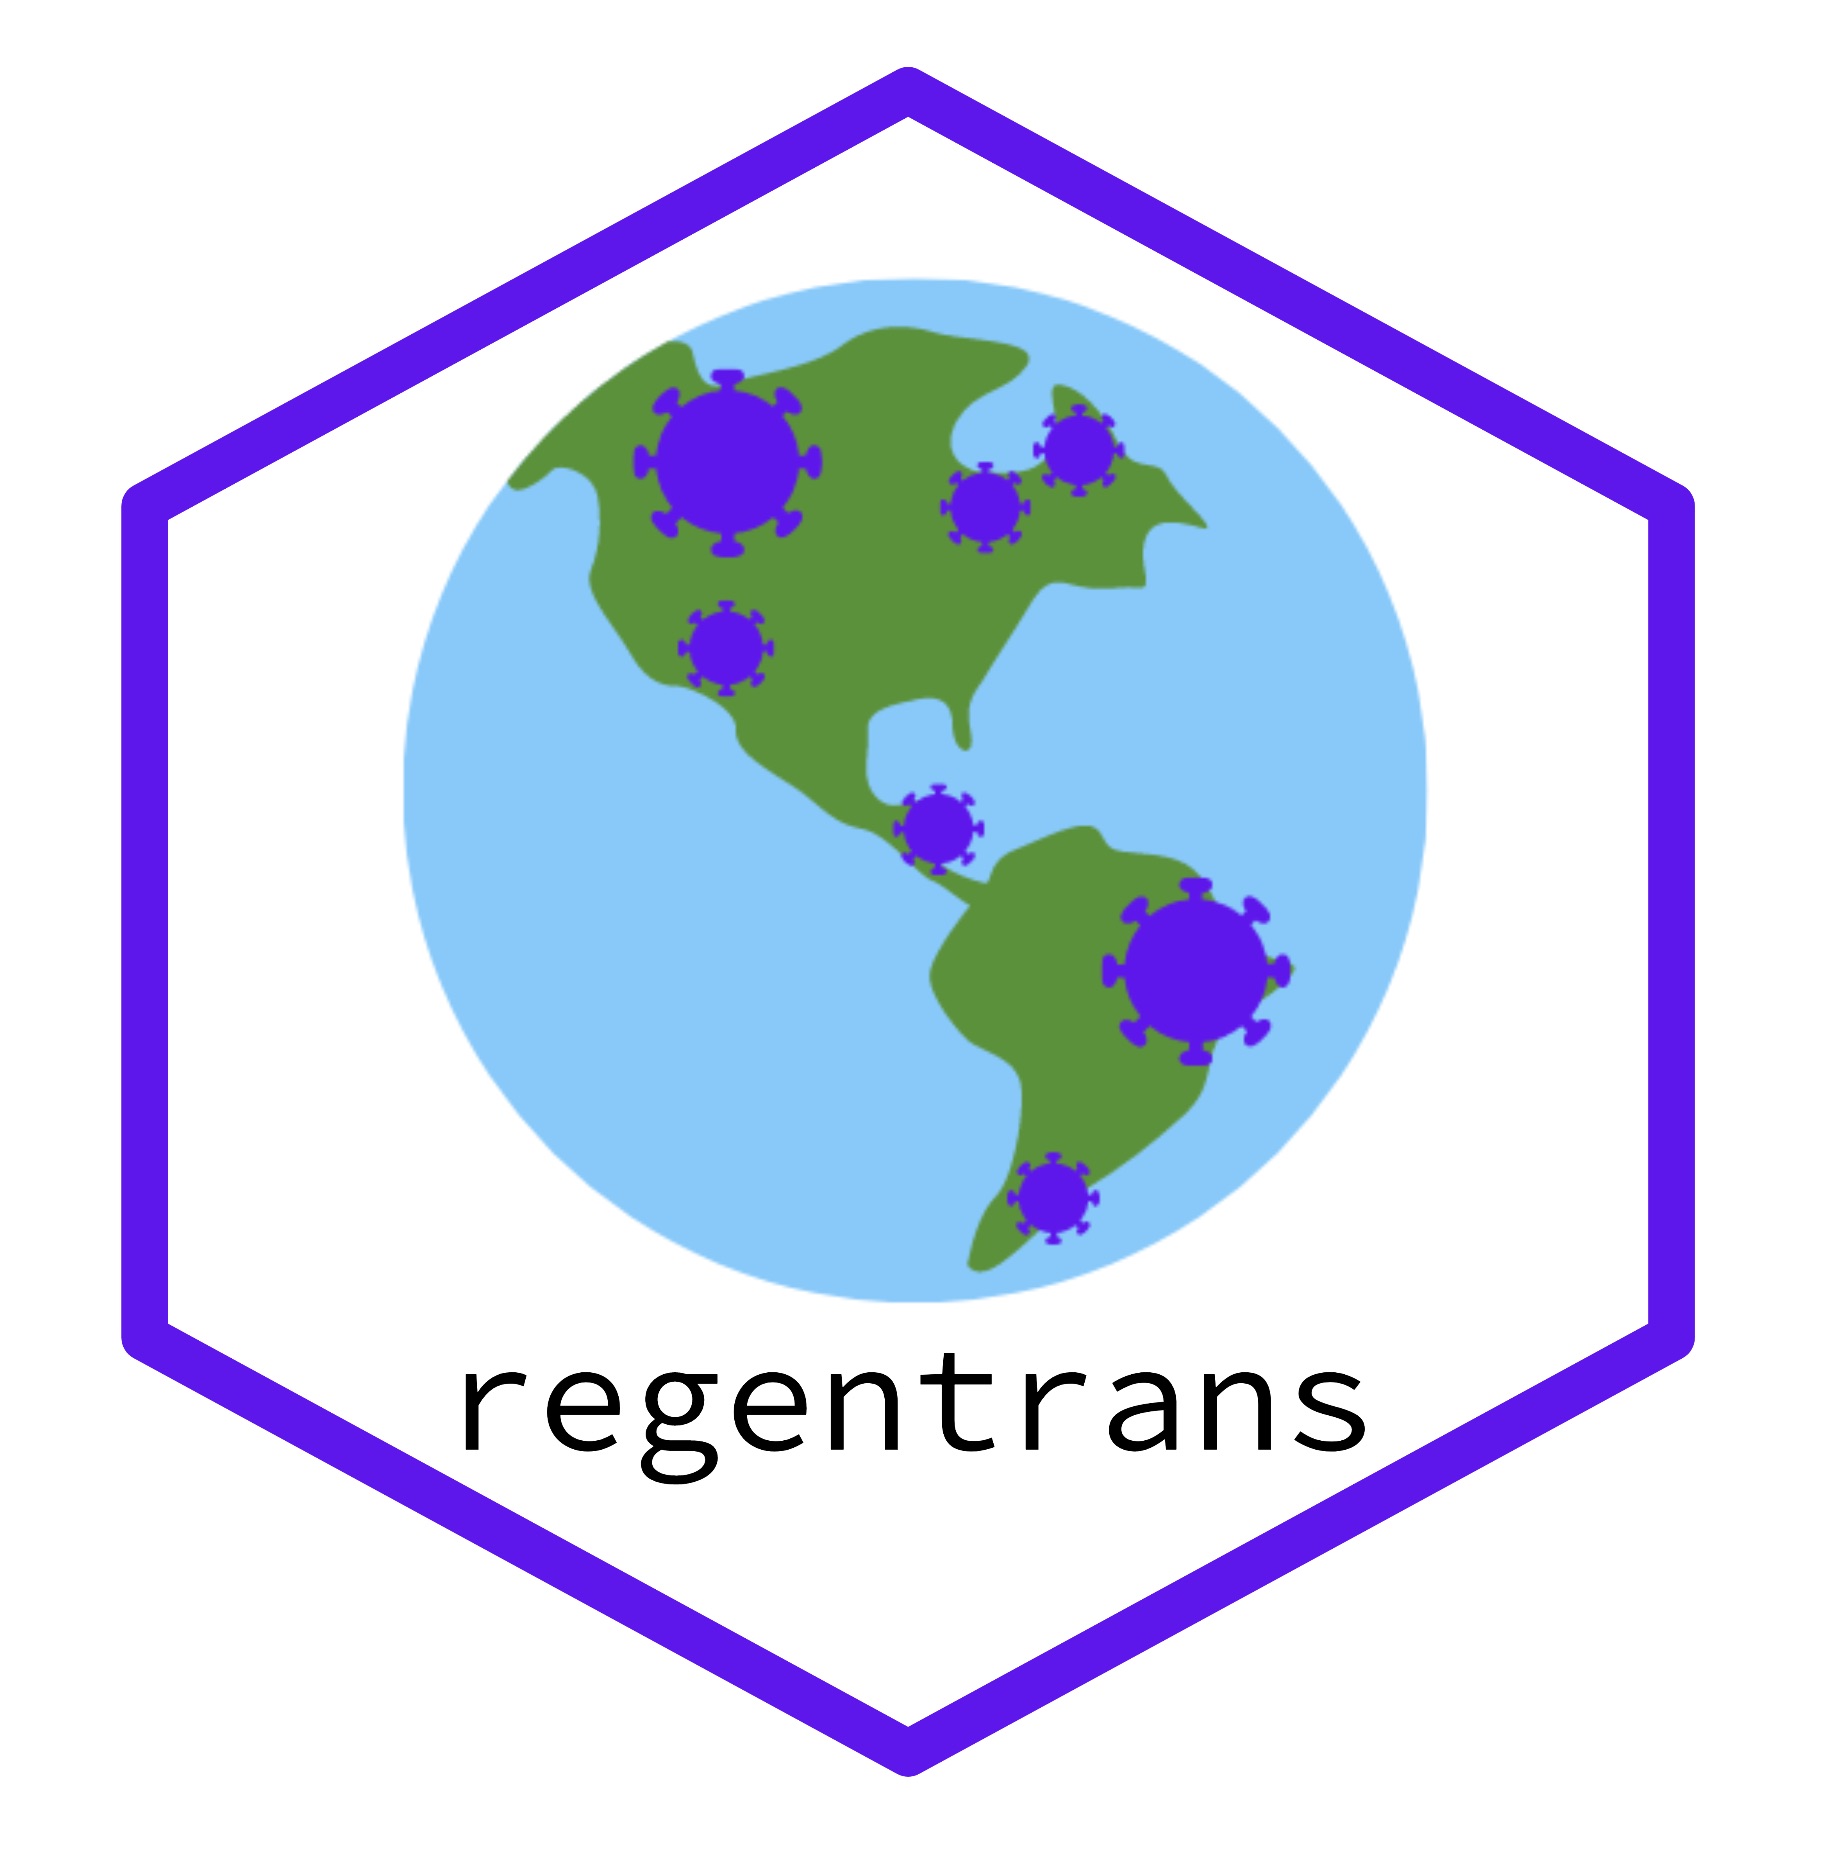 regentrans_logo.jpg